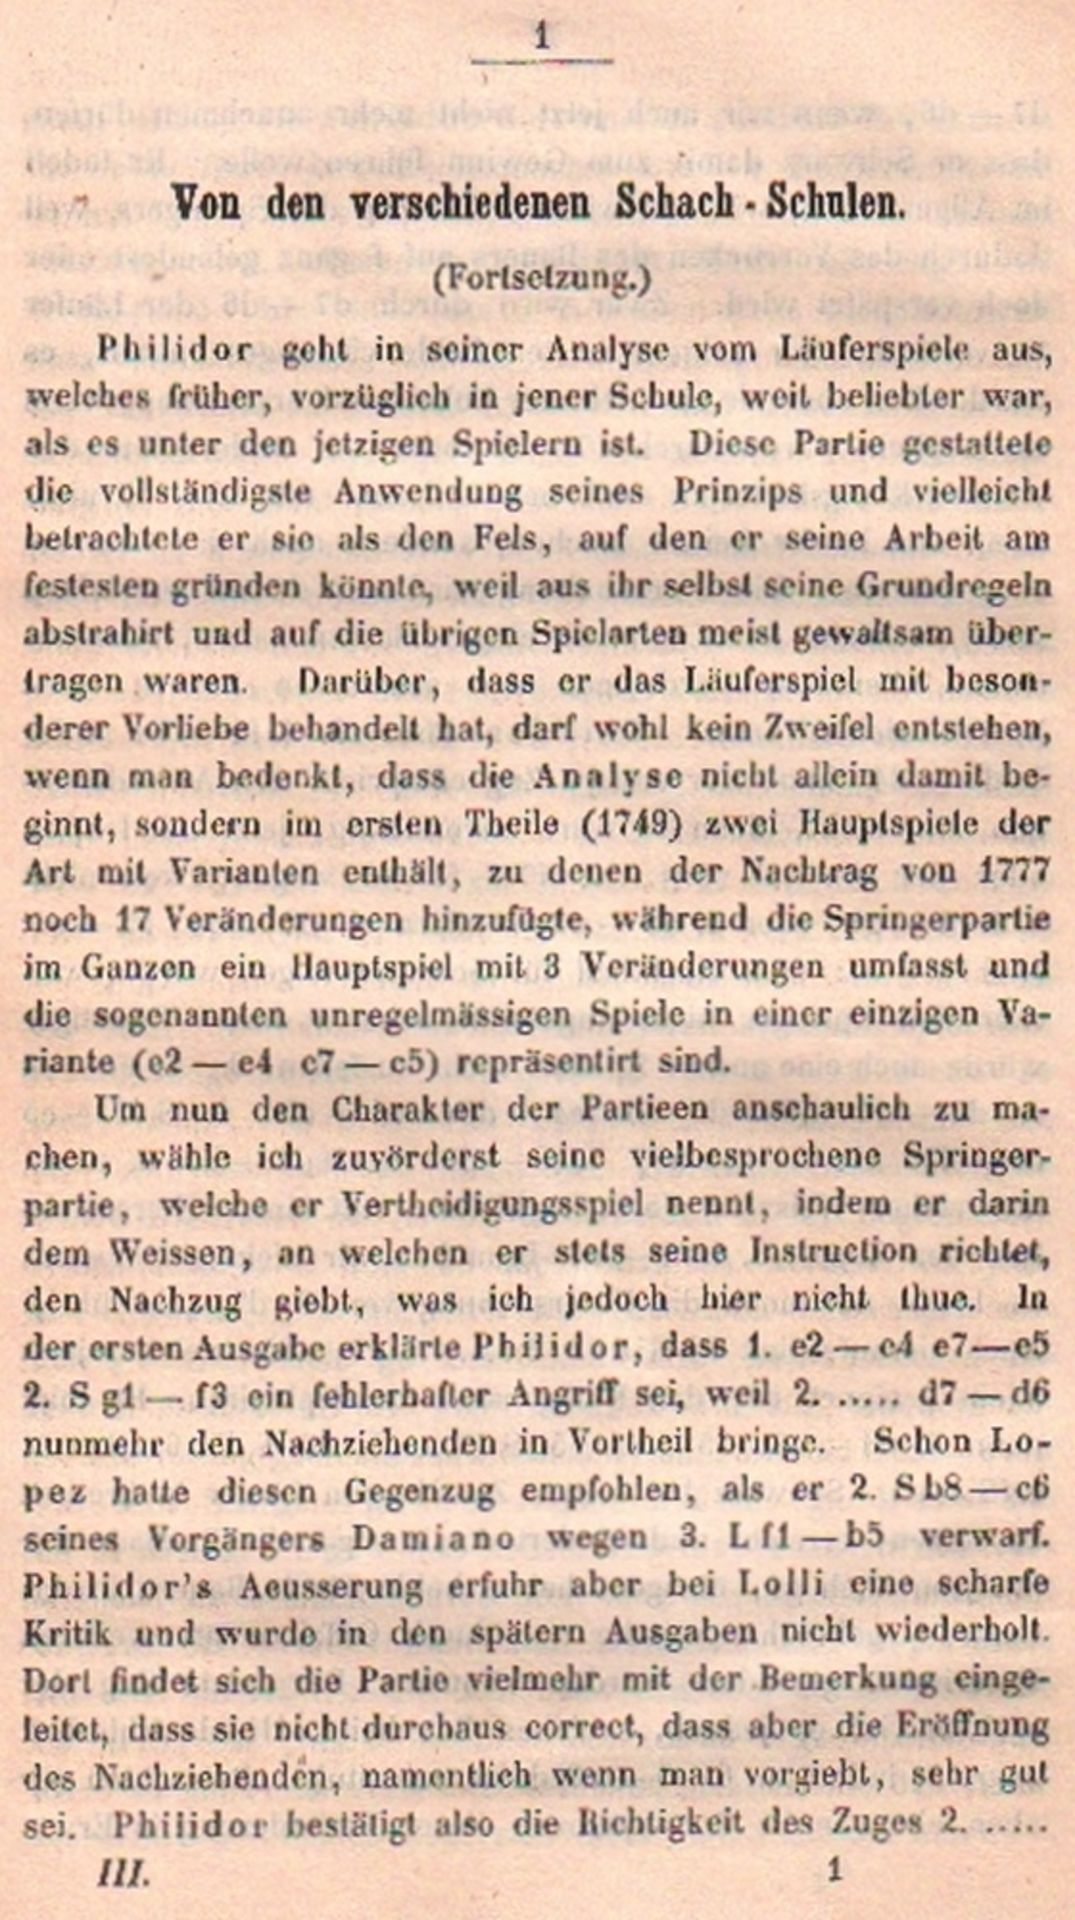 [(Deutsche) Schachzeitung. Hrsg. von der Berliner Schachgesellschaft. 3. Jahrgang 1848. Berlin,